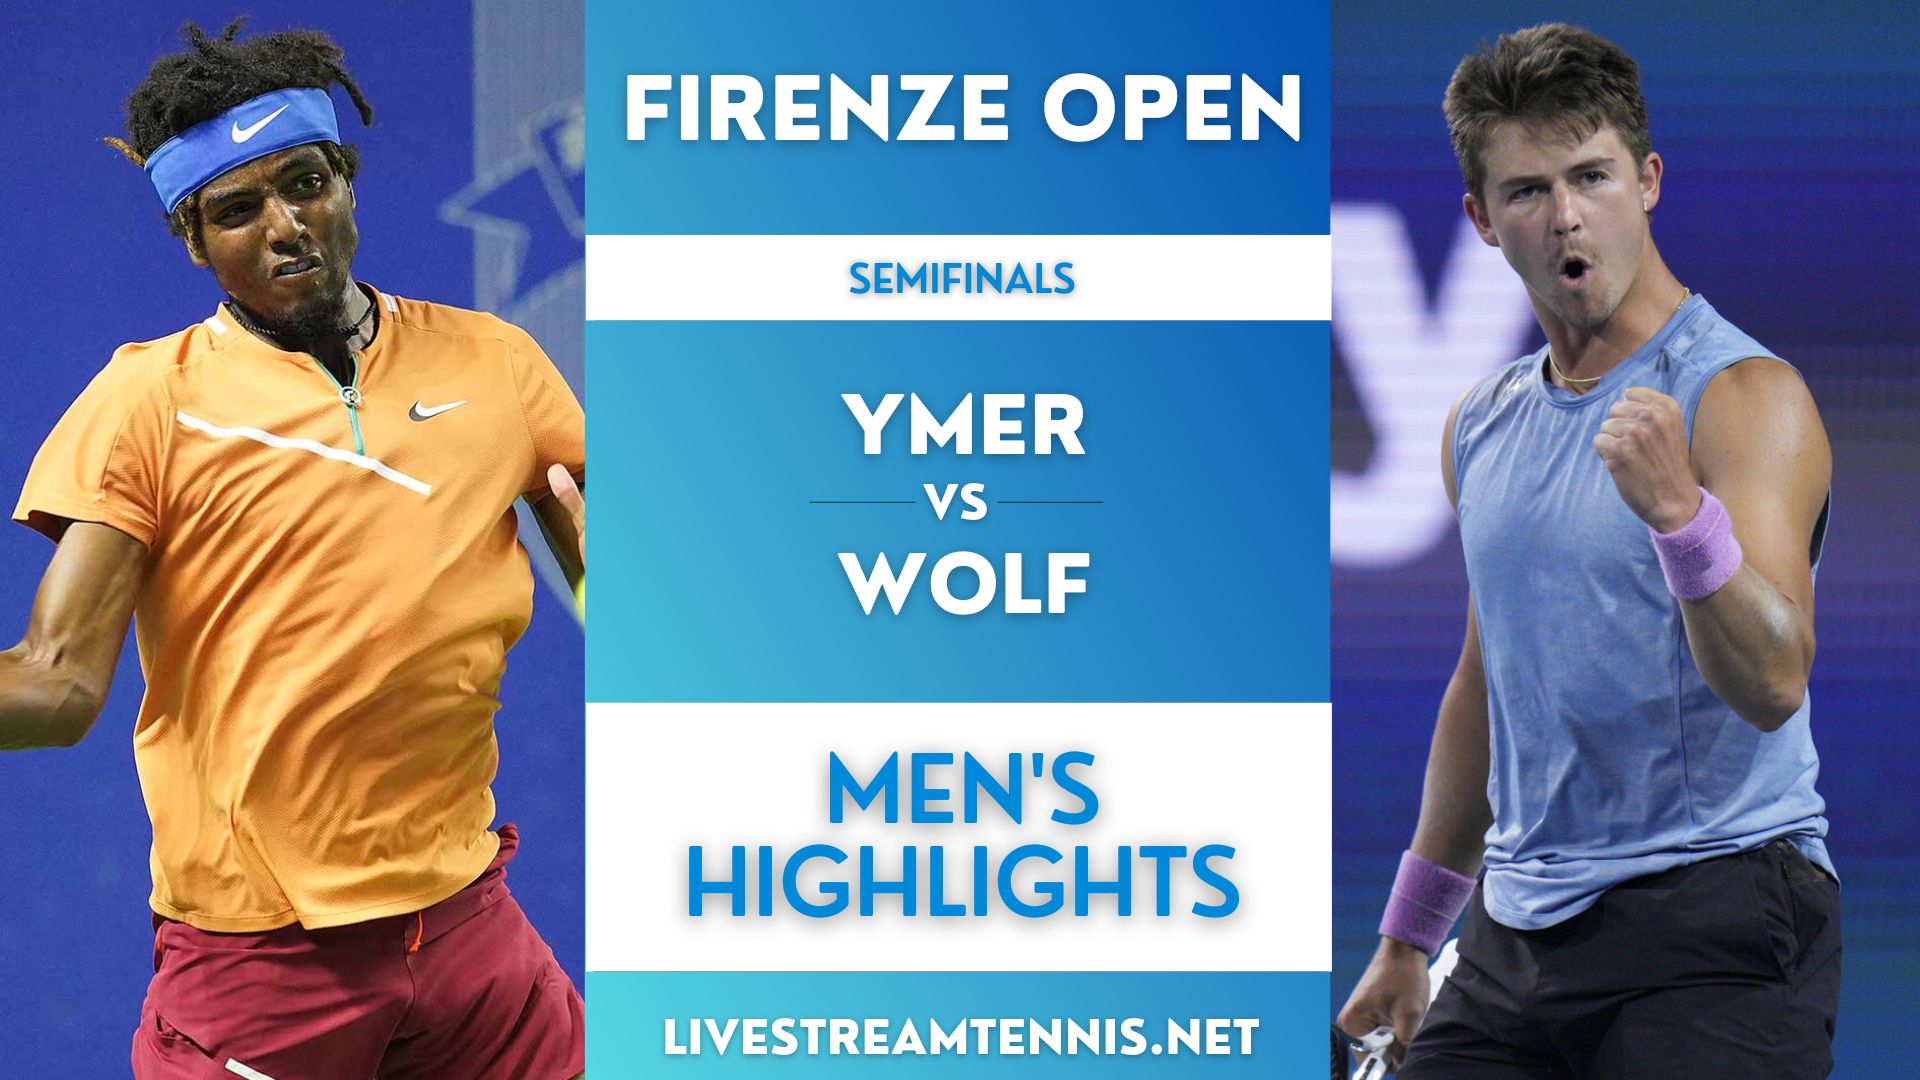 Firenze Open ATP Semifinal 2 Highlights 2022